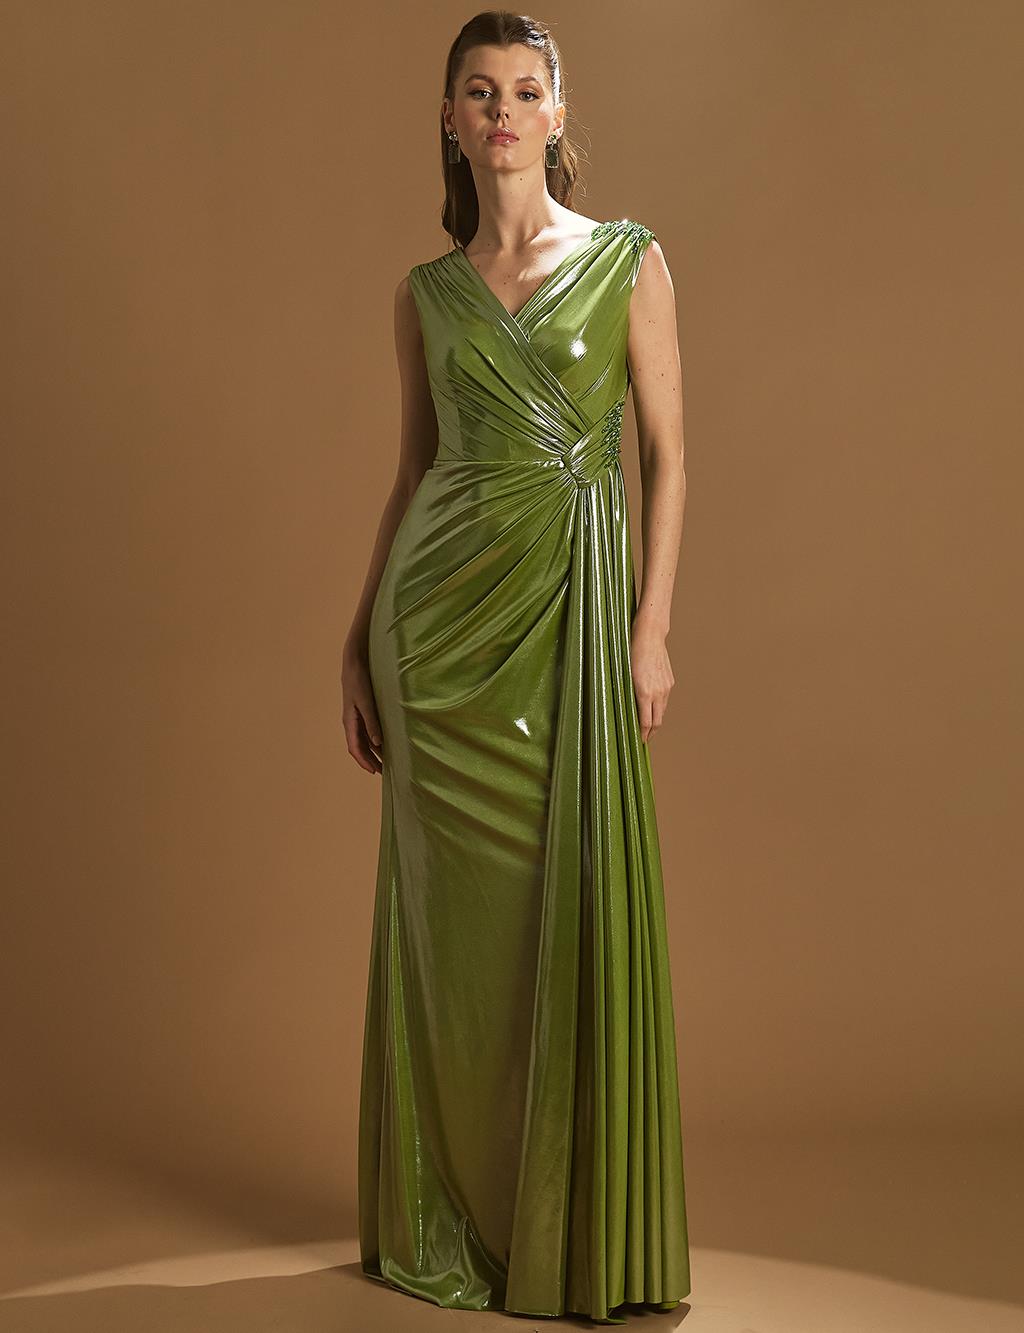 

Вечернее платье в форме рыбы с драпировкой, зеленое Tiara